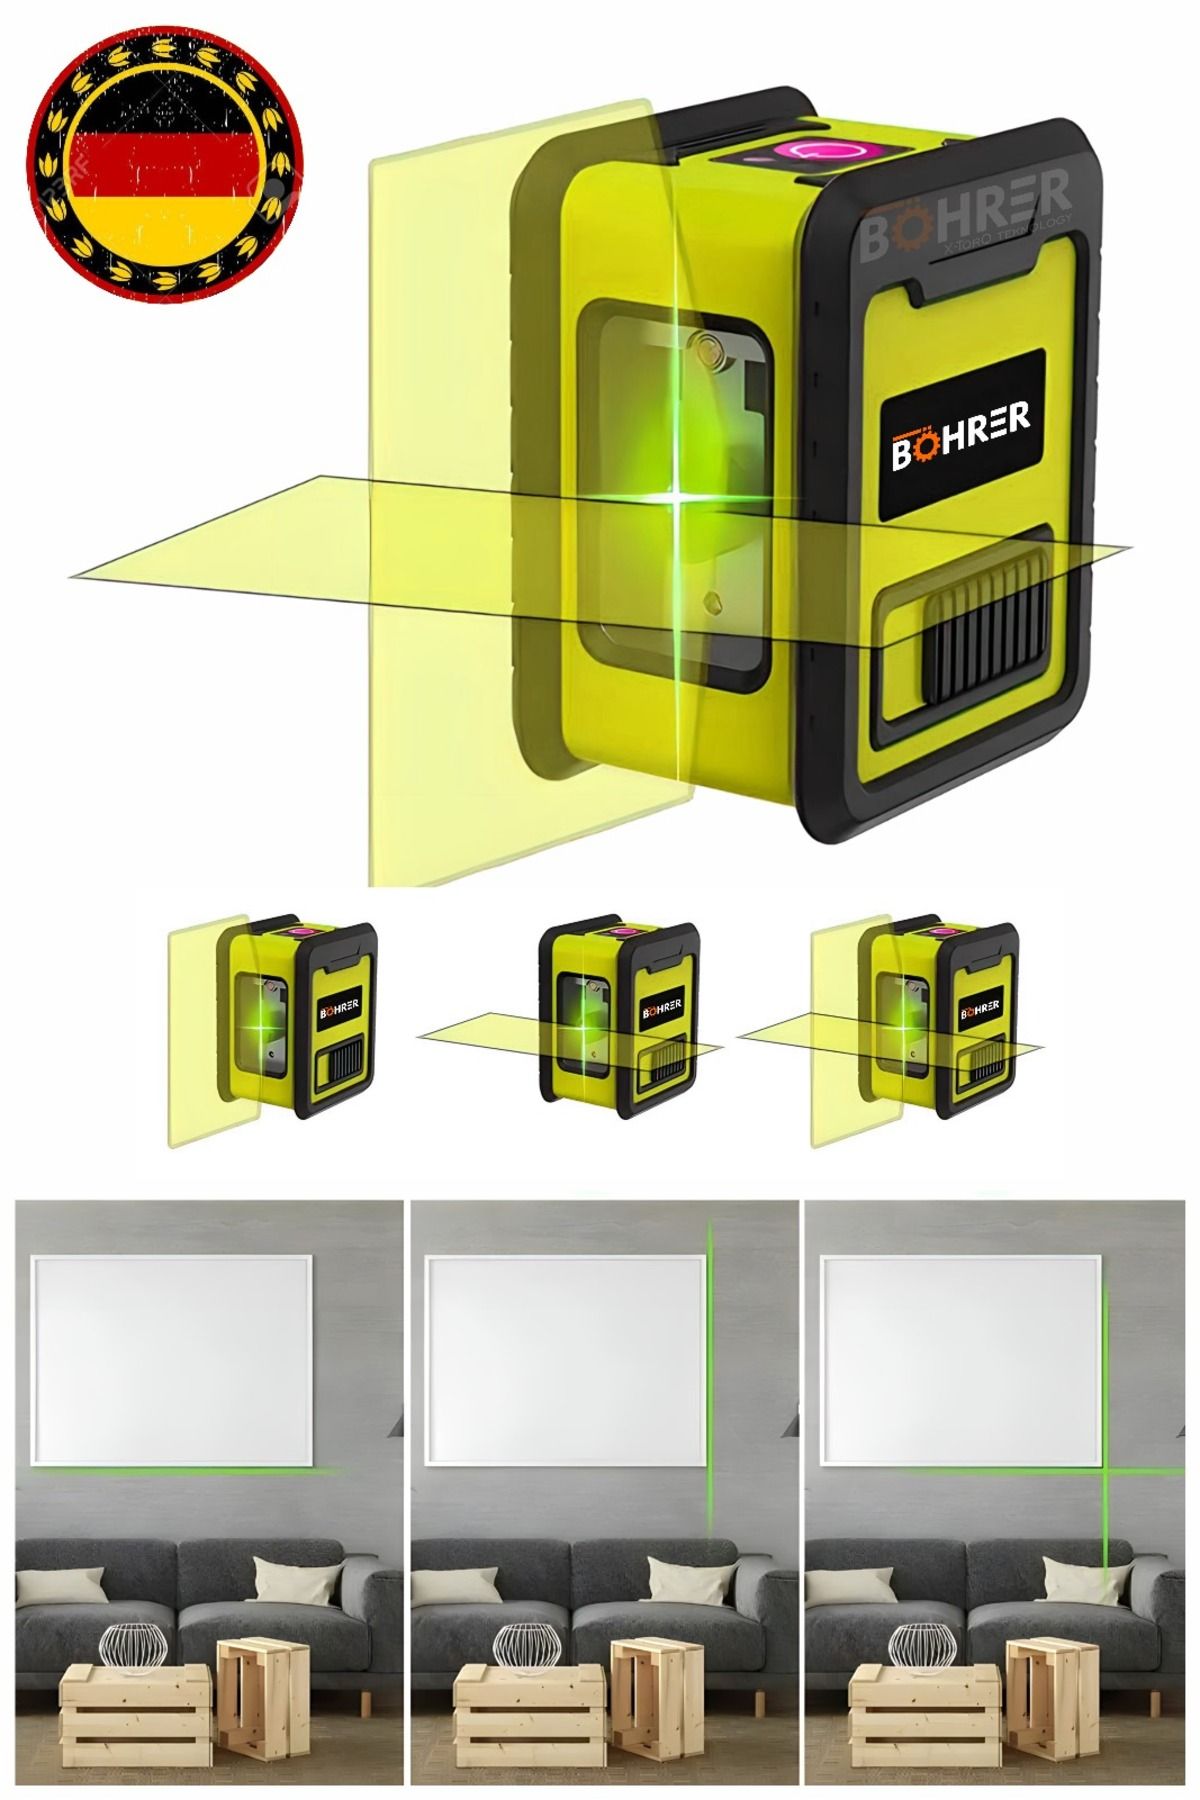 BÖHRER Mini Sarı 2 Köşe Pilli Dikey Ve Yatay Yeşil Işık Lazer Çizgi Hizalama Makinesi